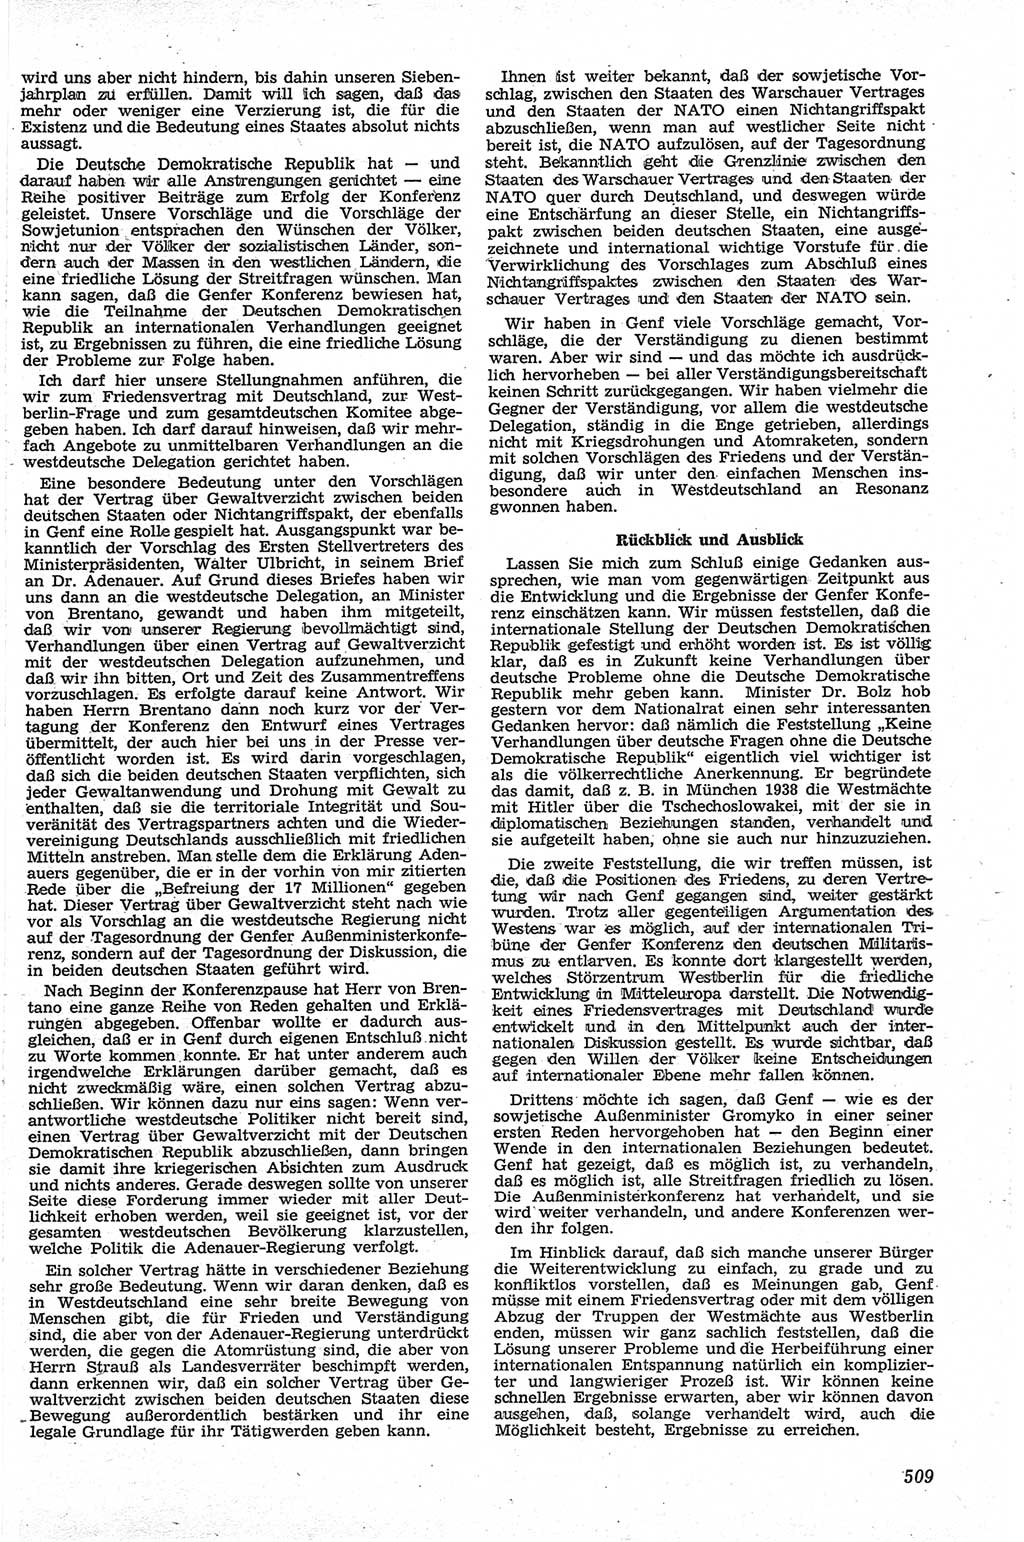 Neue Justiz (NJ), Zeitschrift für Recht und Rechtswissenschaft [Deutsche Demokratische Republik (DDR)], 13. Jahrgang 1959, Seite 509 (NJ DDR 1959, S. 509)